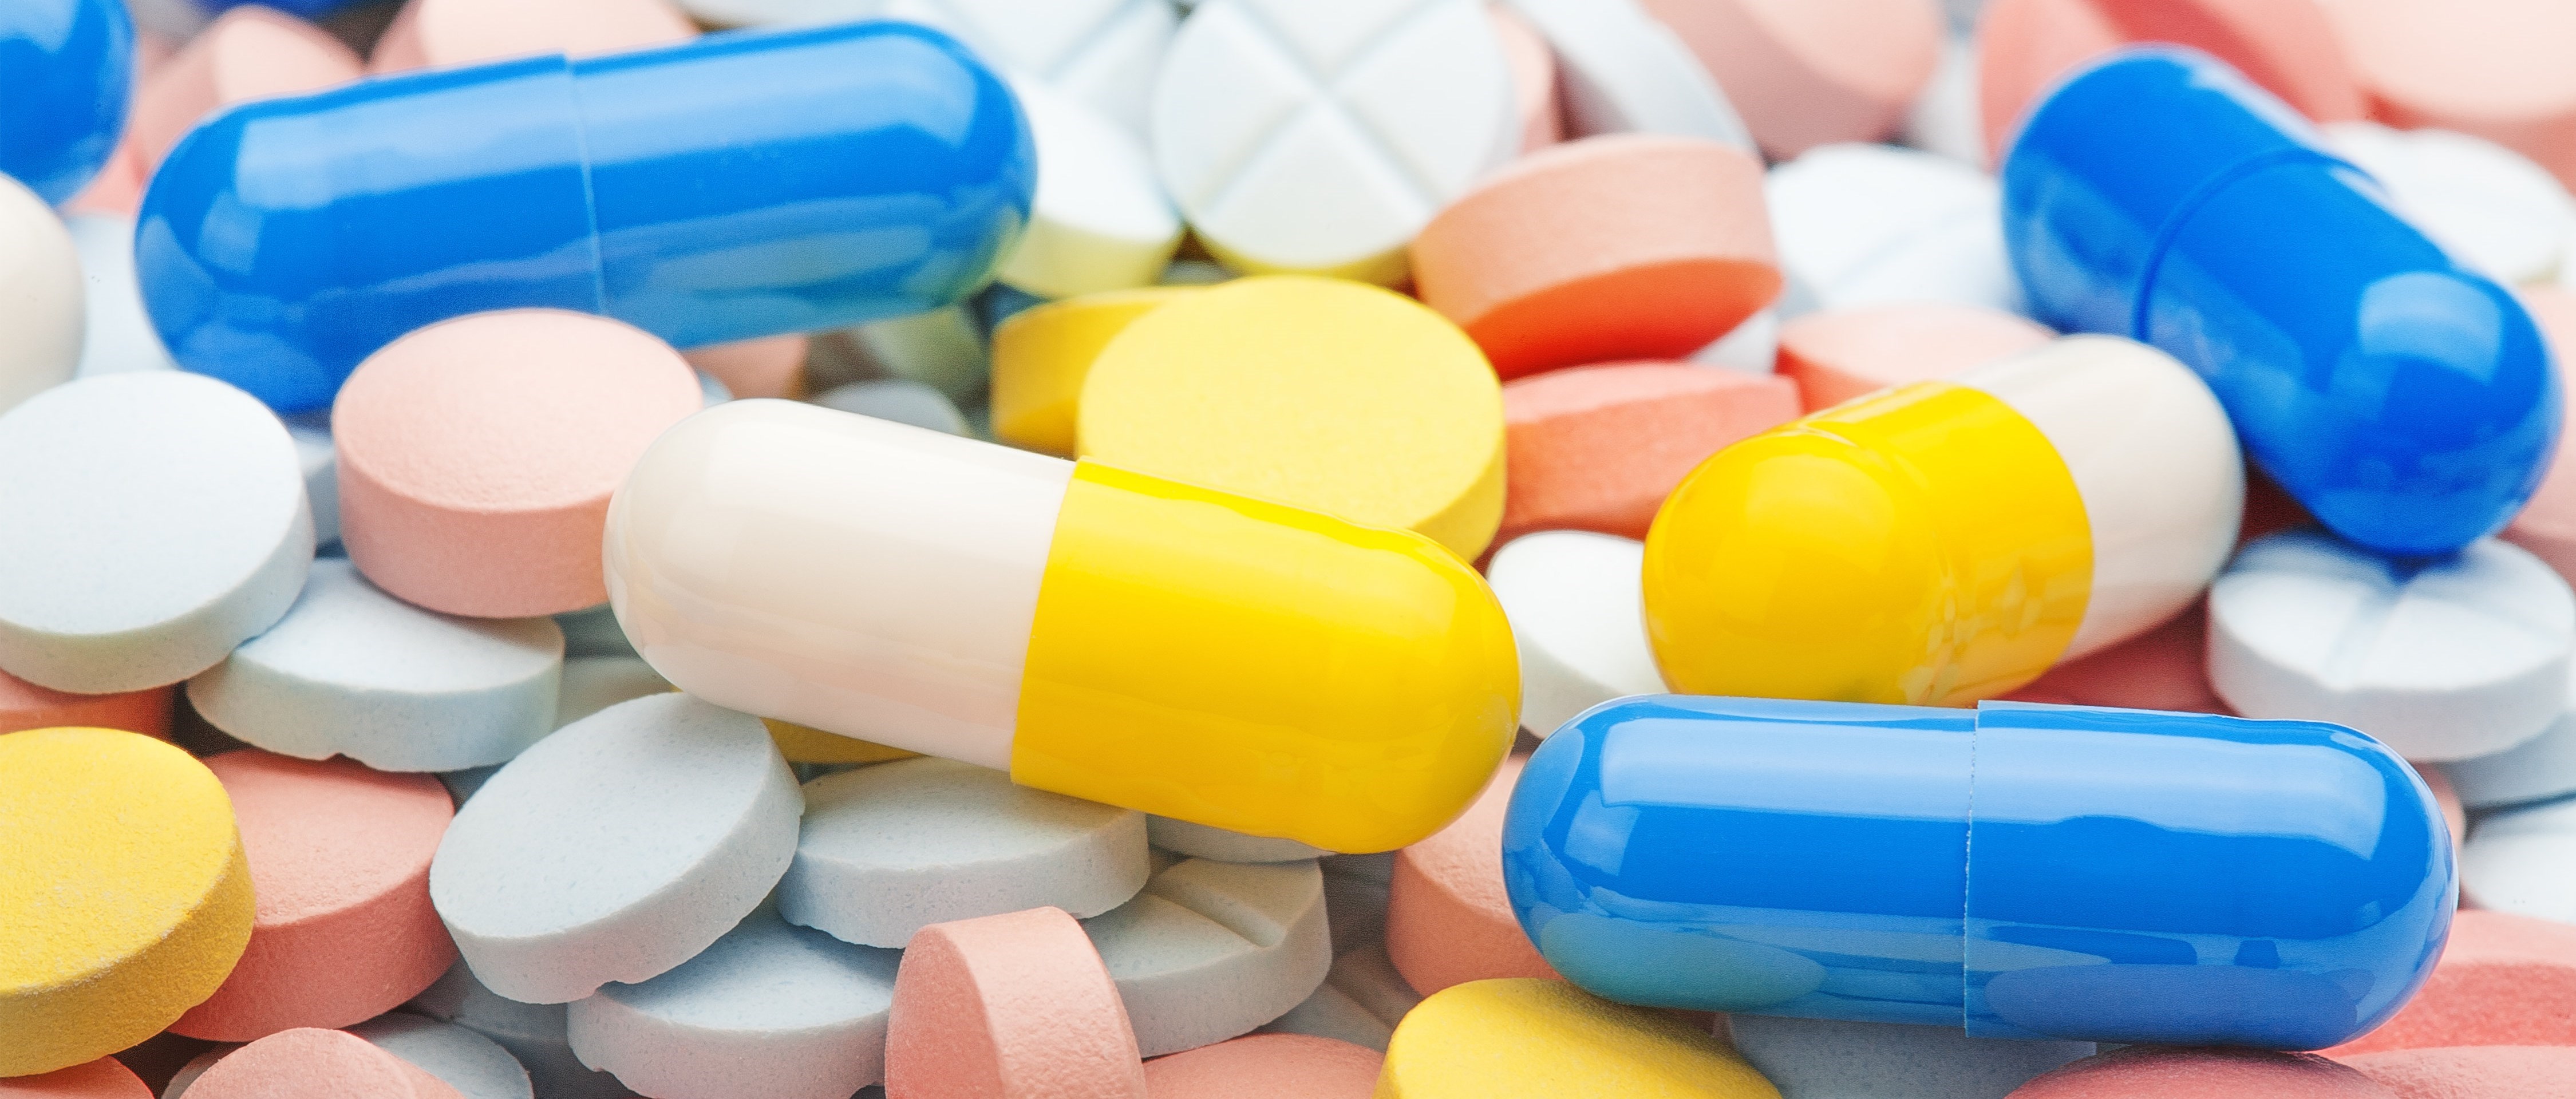 Närbild av många tabletter och piller i olika färger.